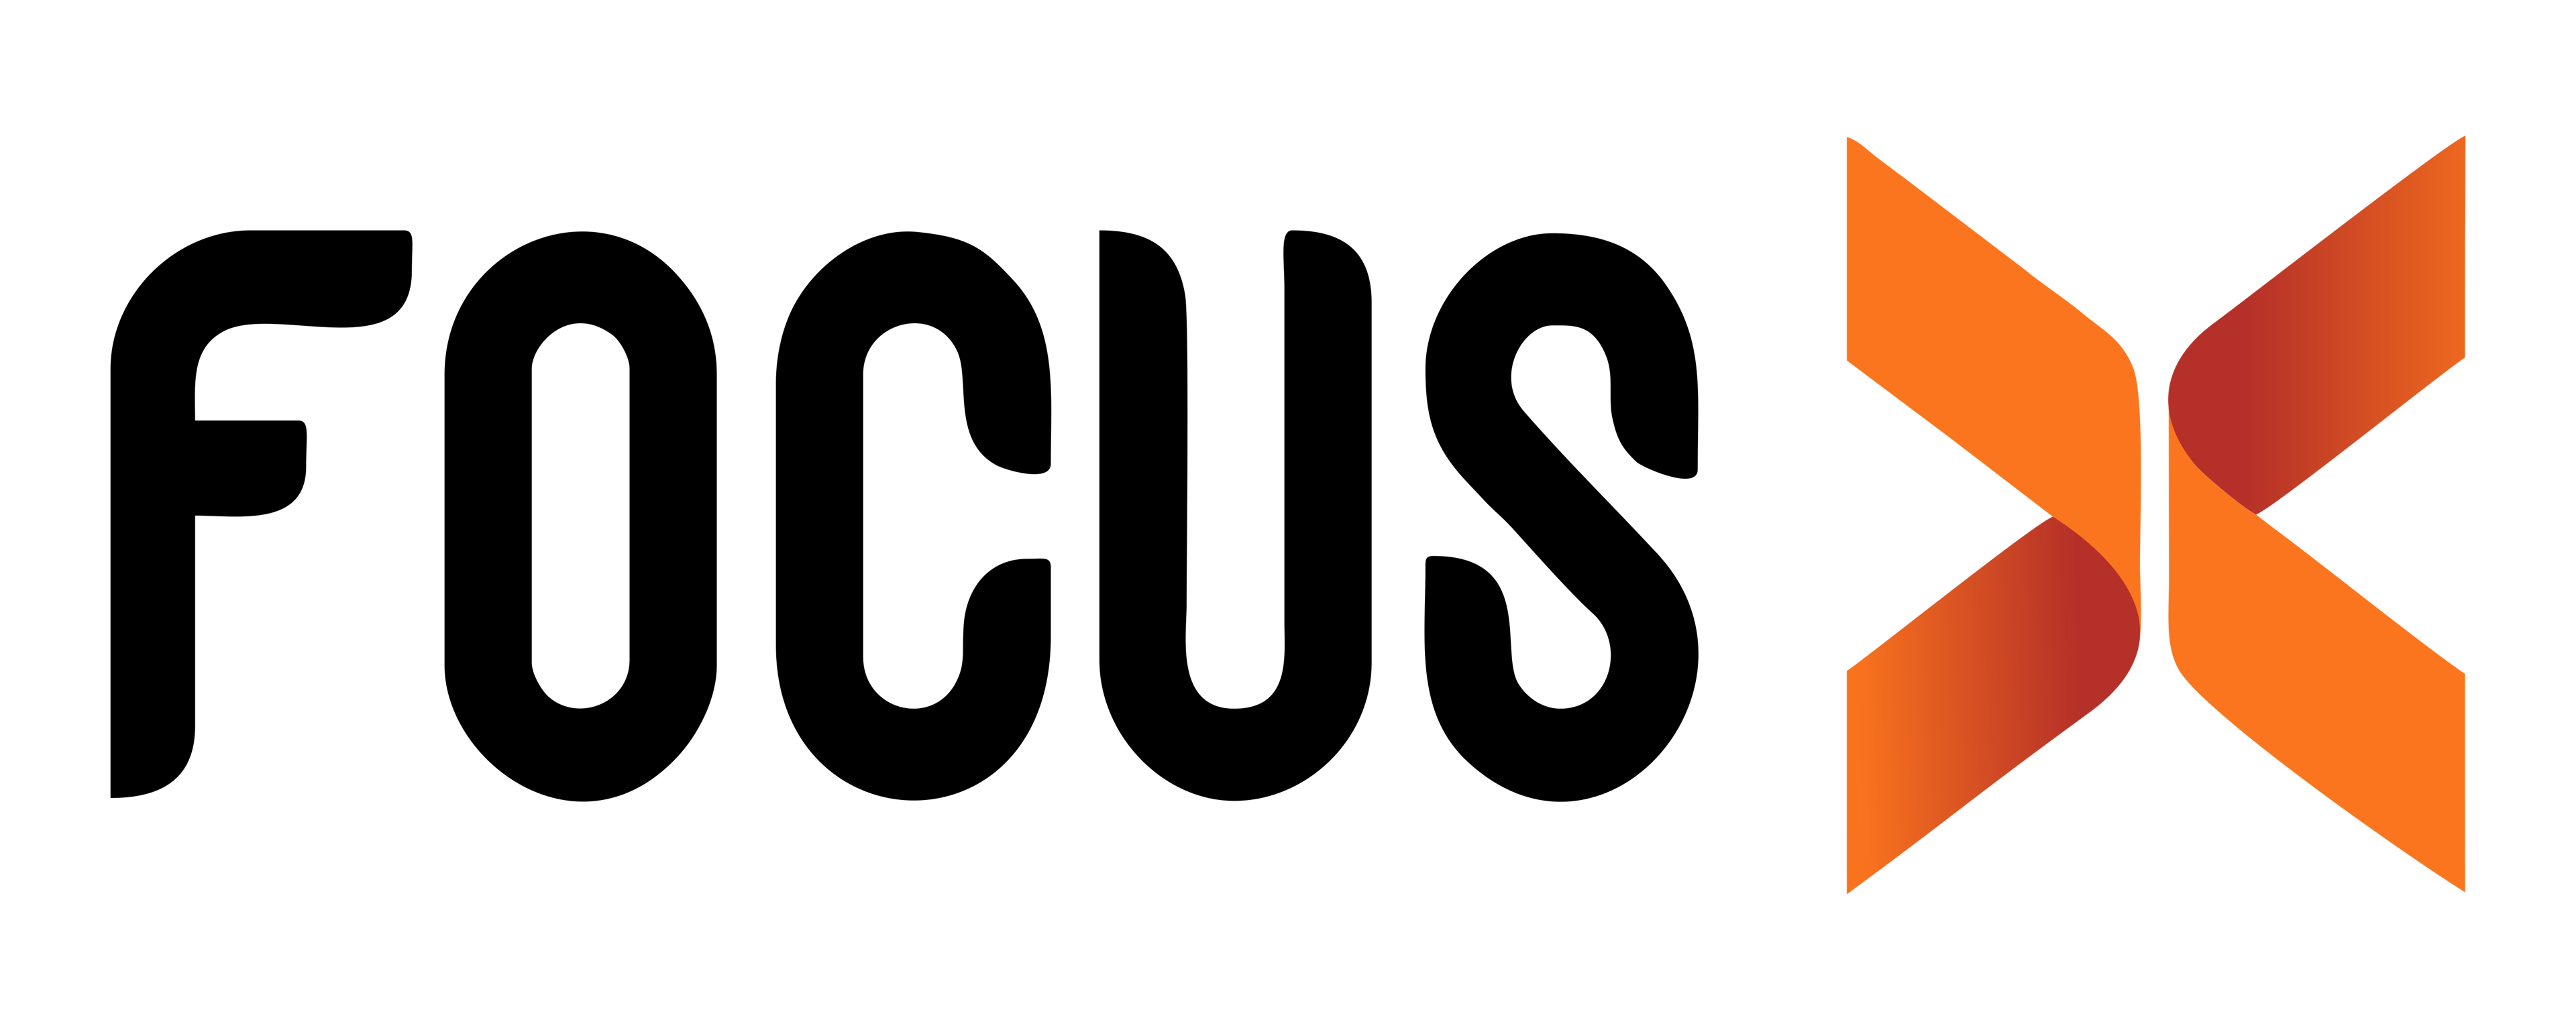 Focus X Logo